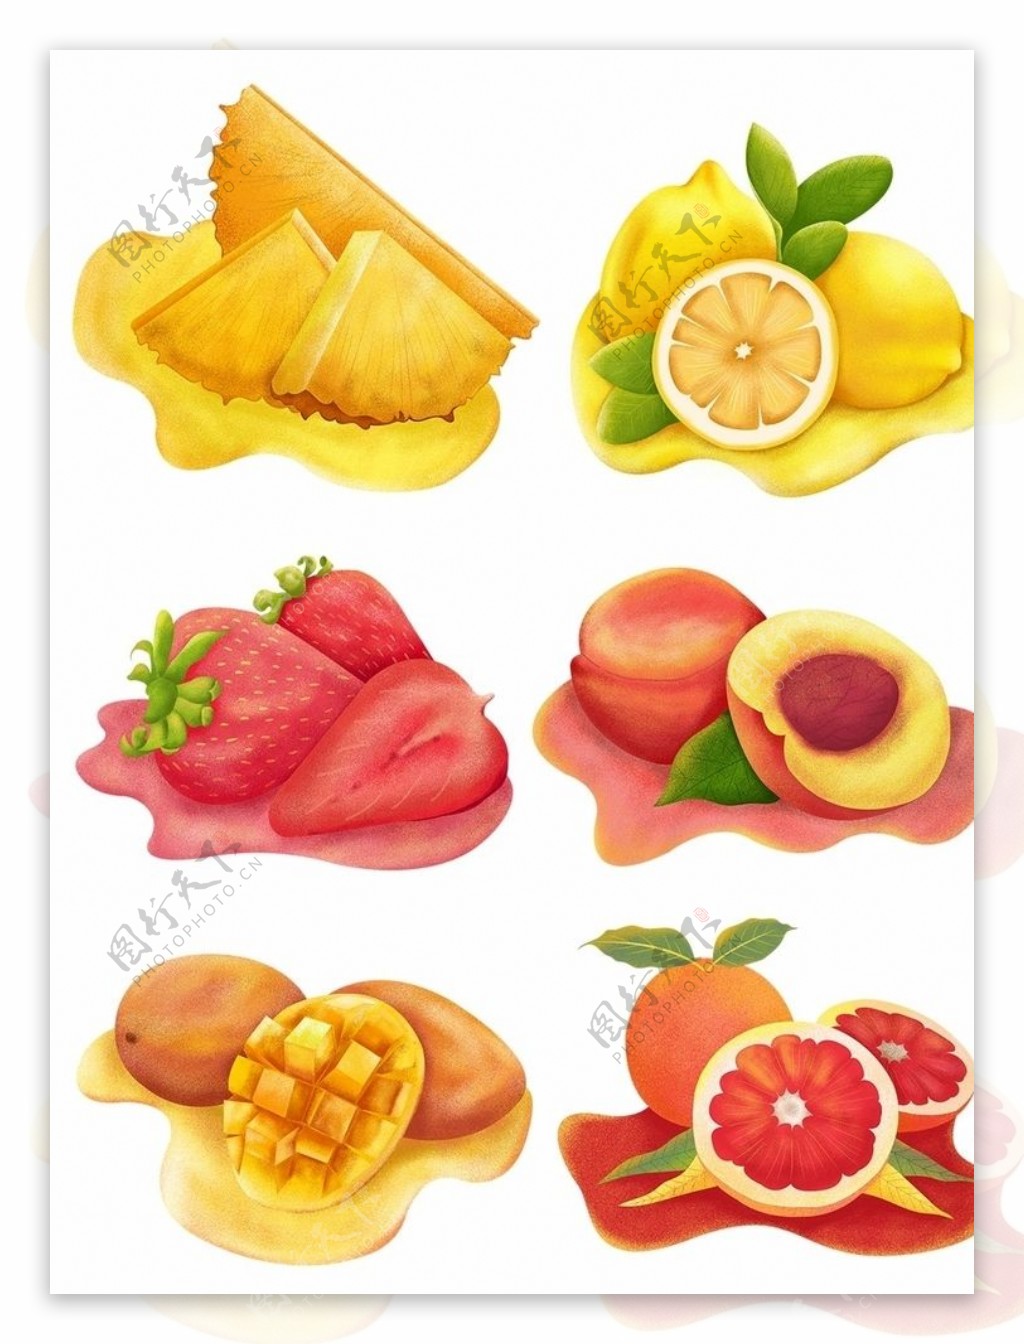 水果合集图片